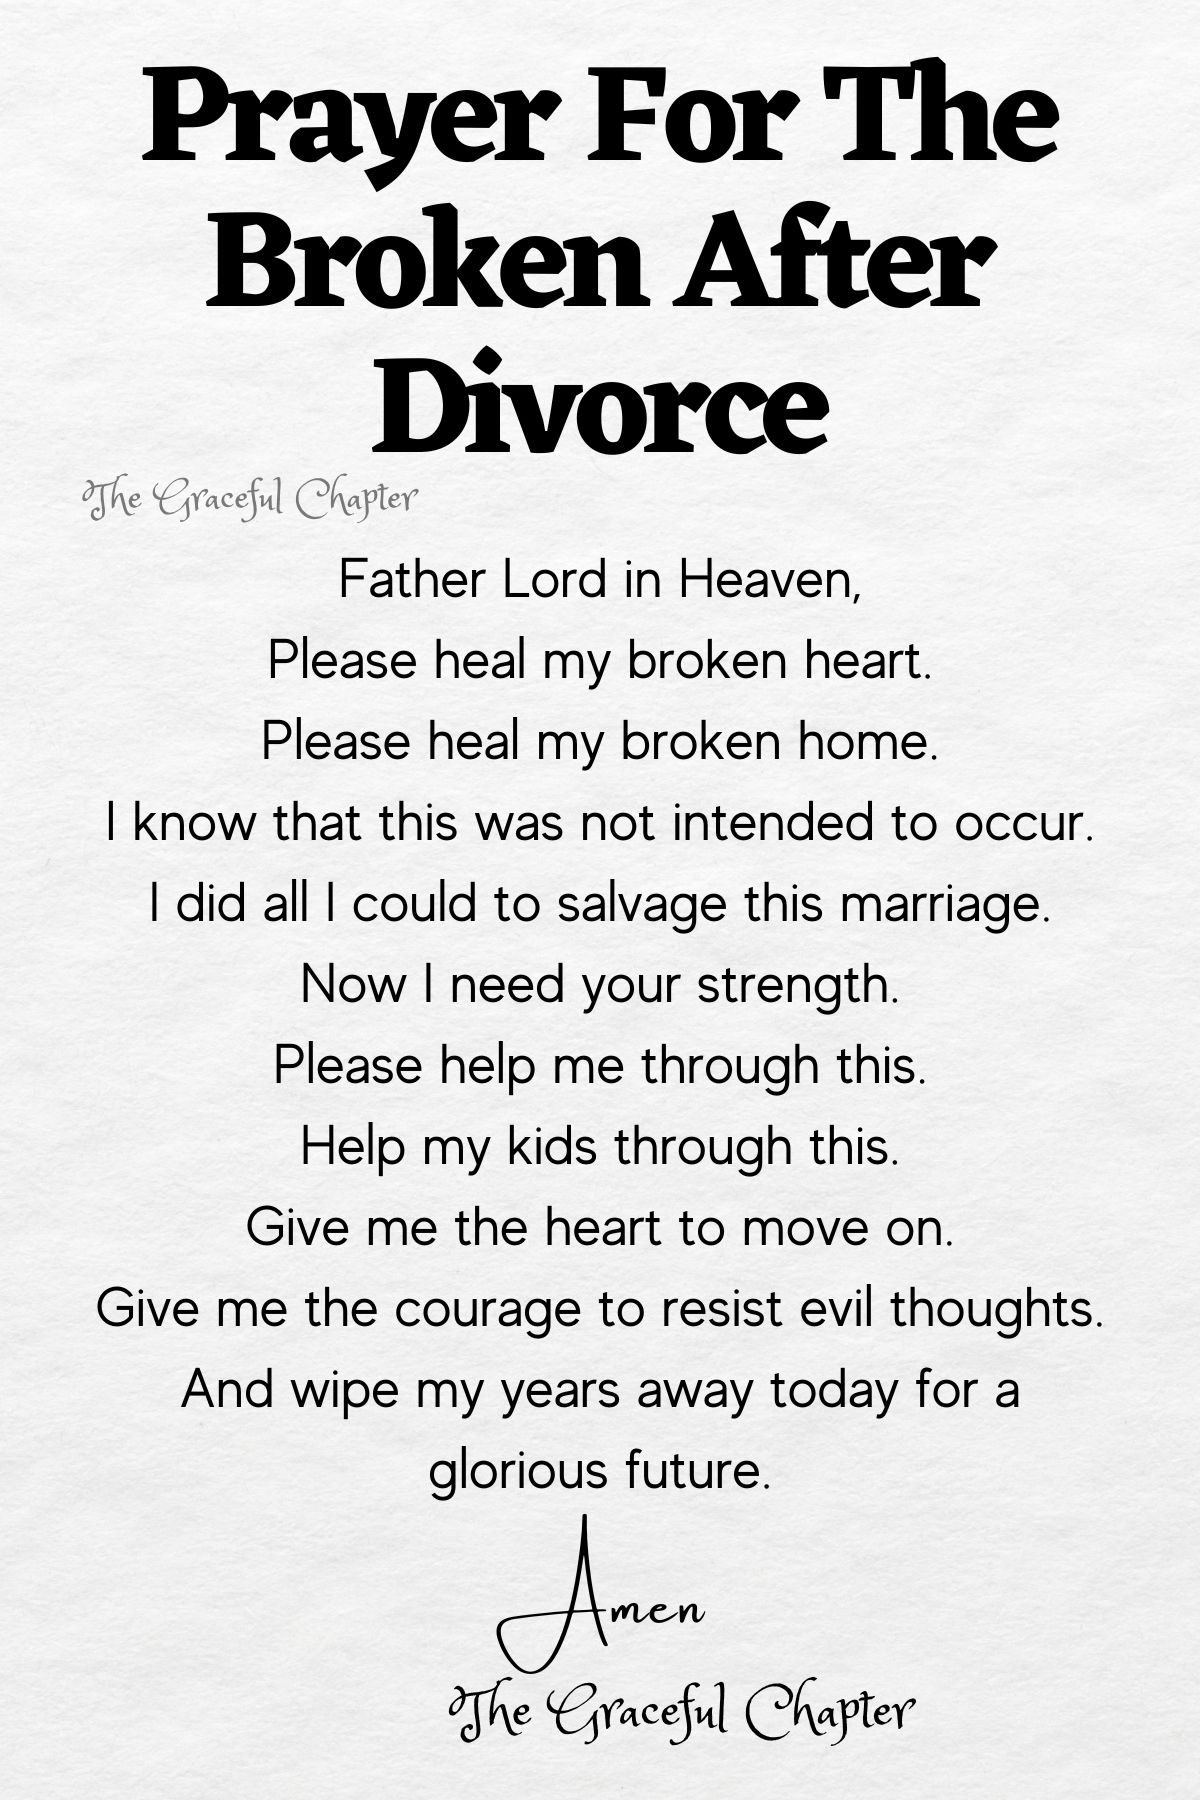 For the broken after divorce